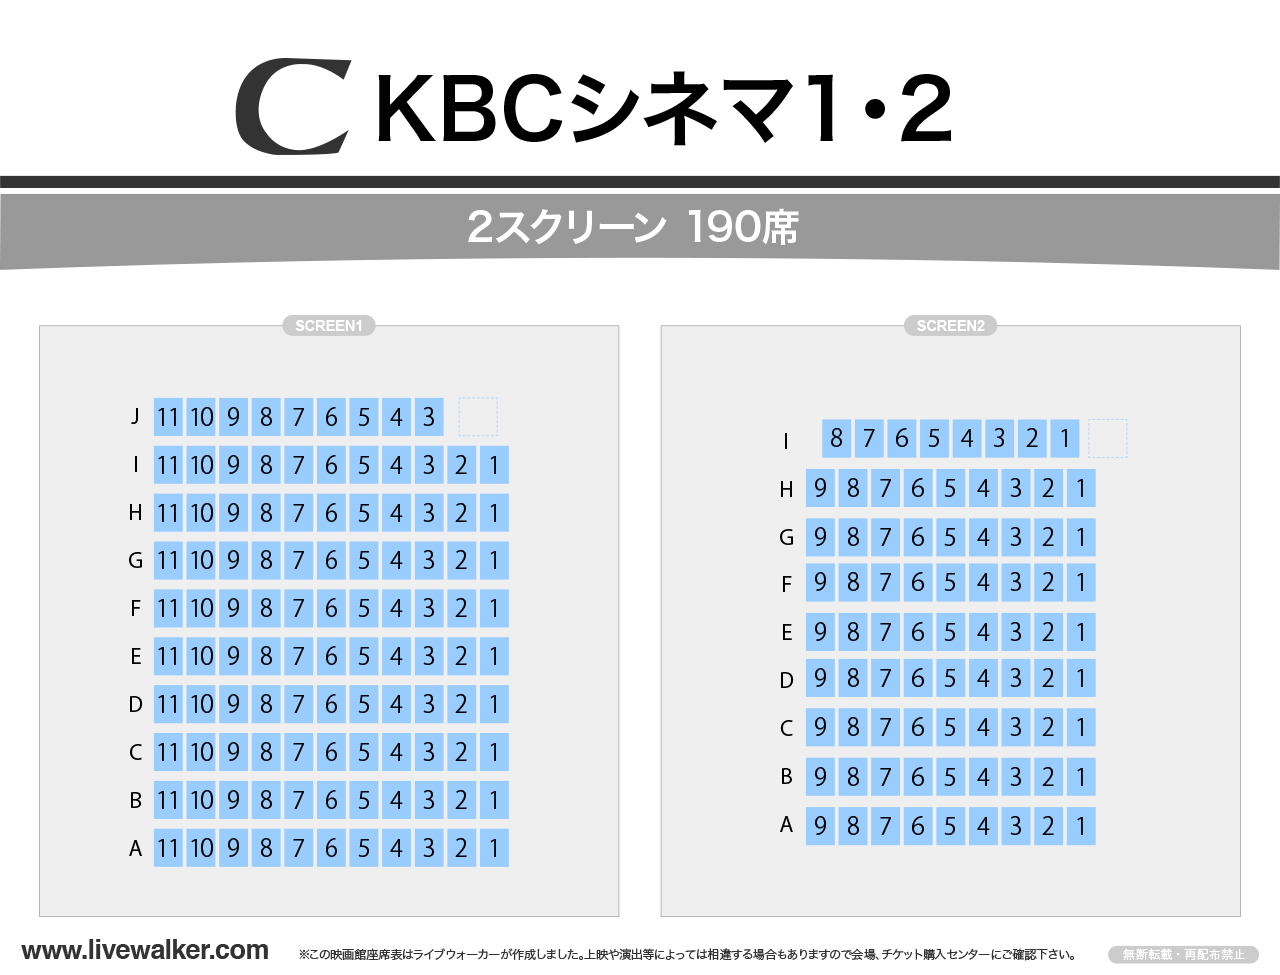 KBCシネマ1･2の座席表